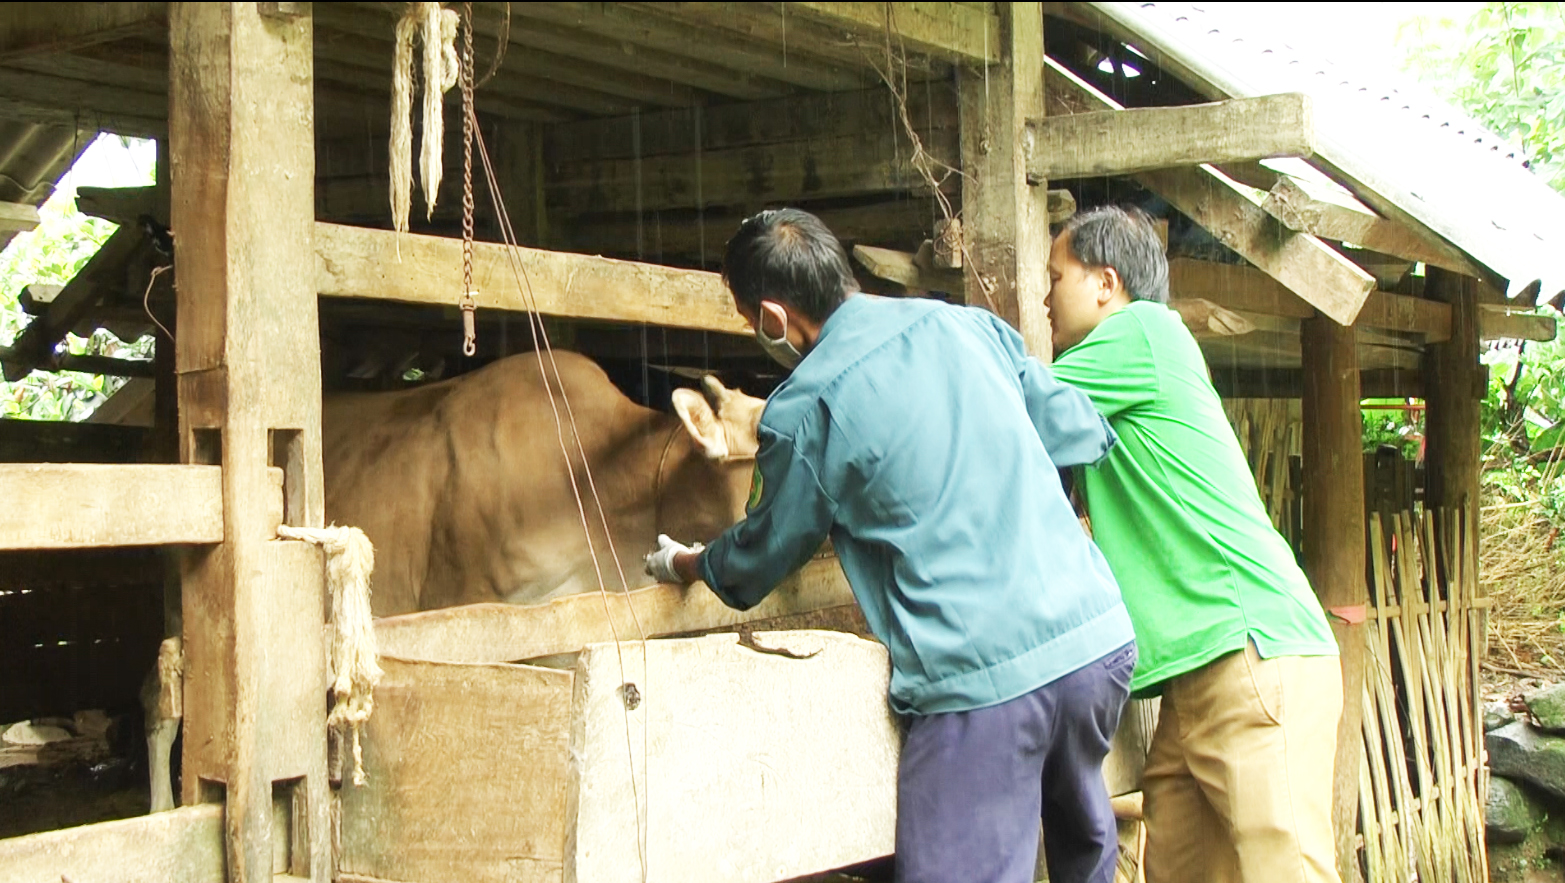 Quản Bạ: Chữa khỏi trên 1.700 con trâu bò nhiễm bệnh viêm da nổi cục.